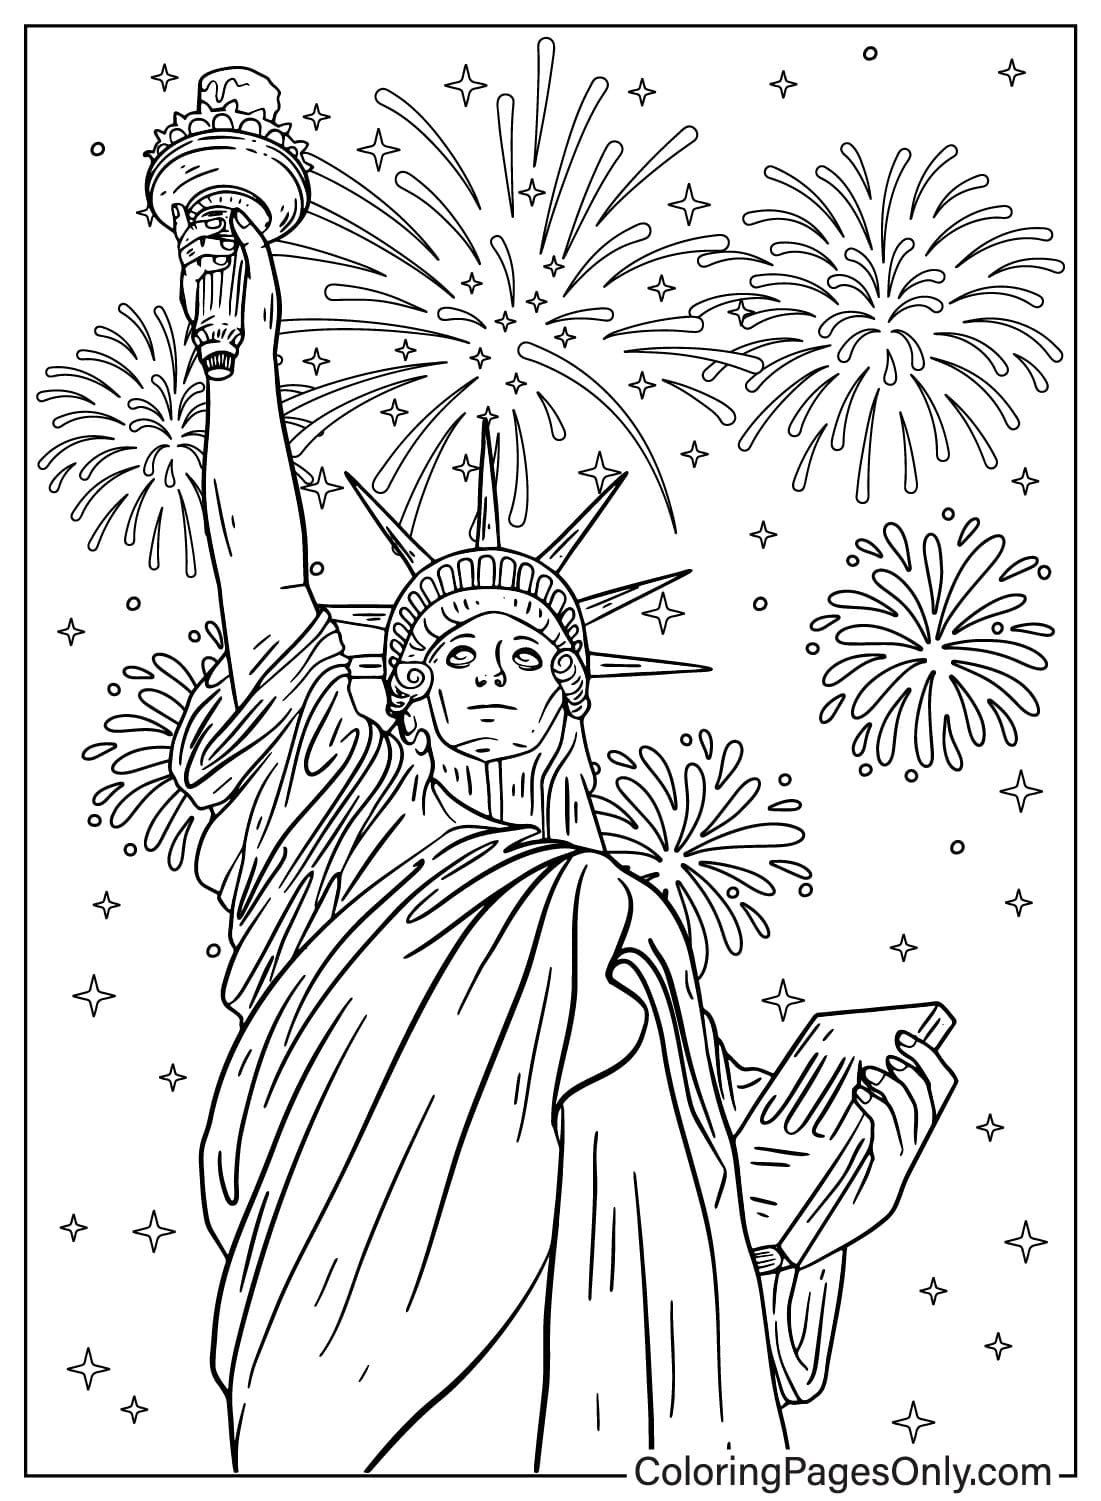 Página para colorear de la Estatua de la Libertad y los fuegos artificiales de la Estatua de la Libertad